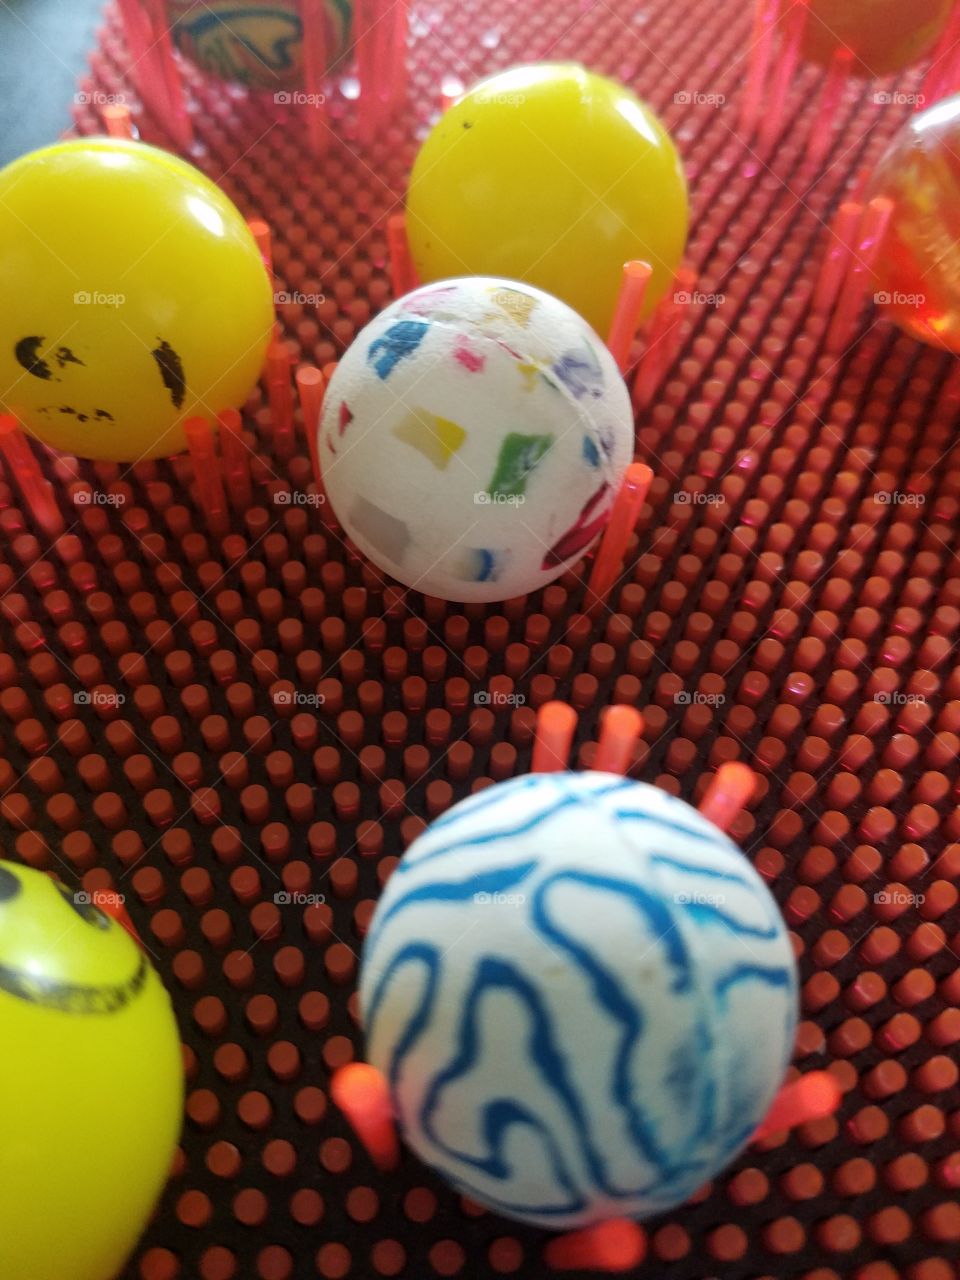 bouncy balls!